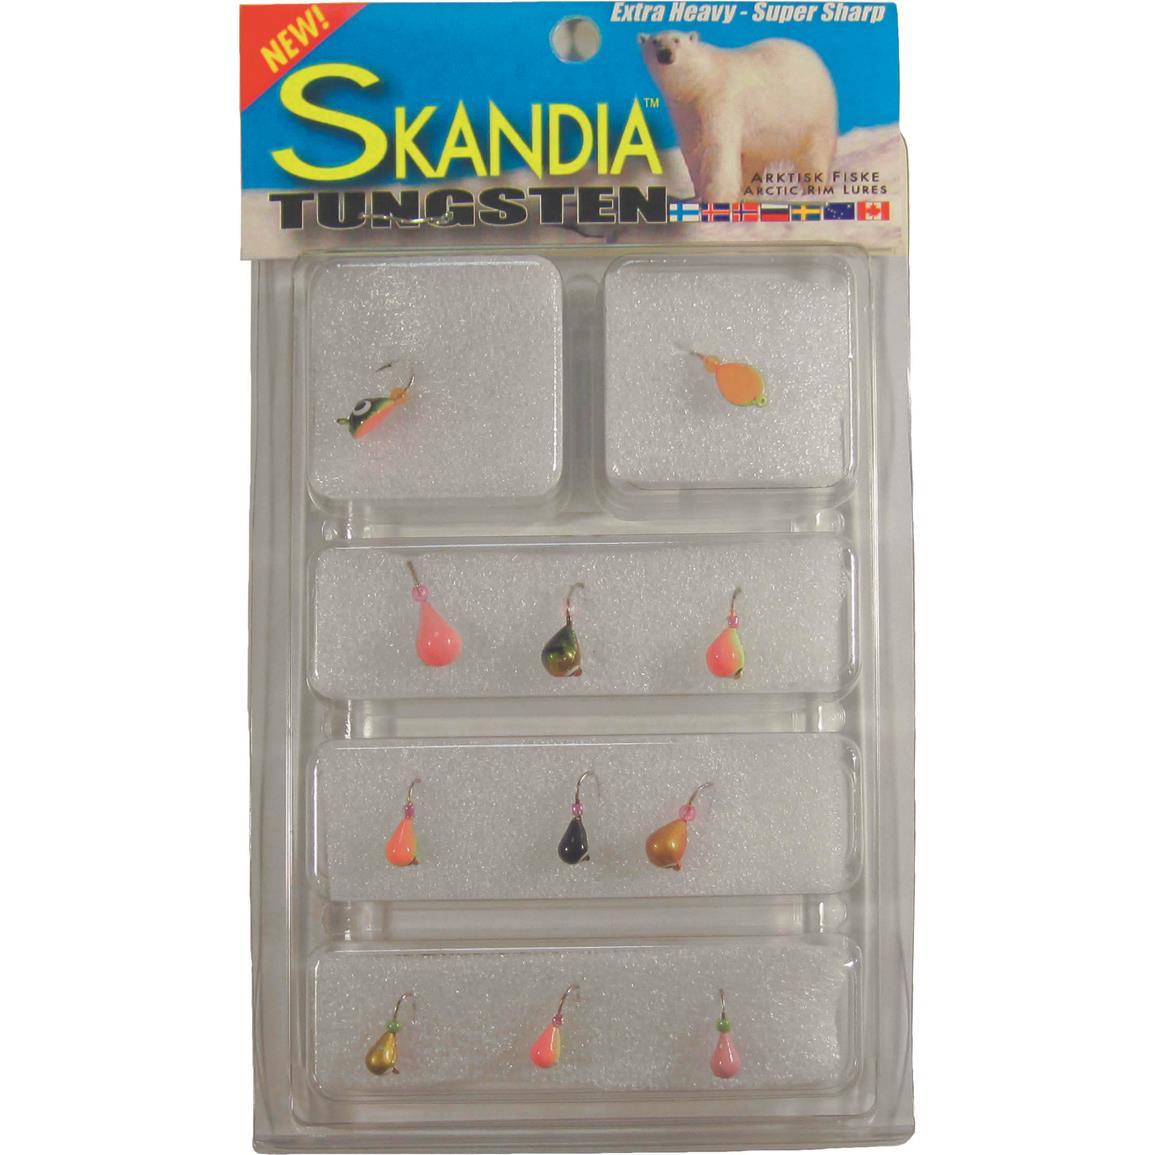 Skandia Tungsten Assorted Ice Jig Kit, 11 Pieces